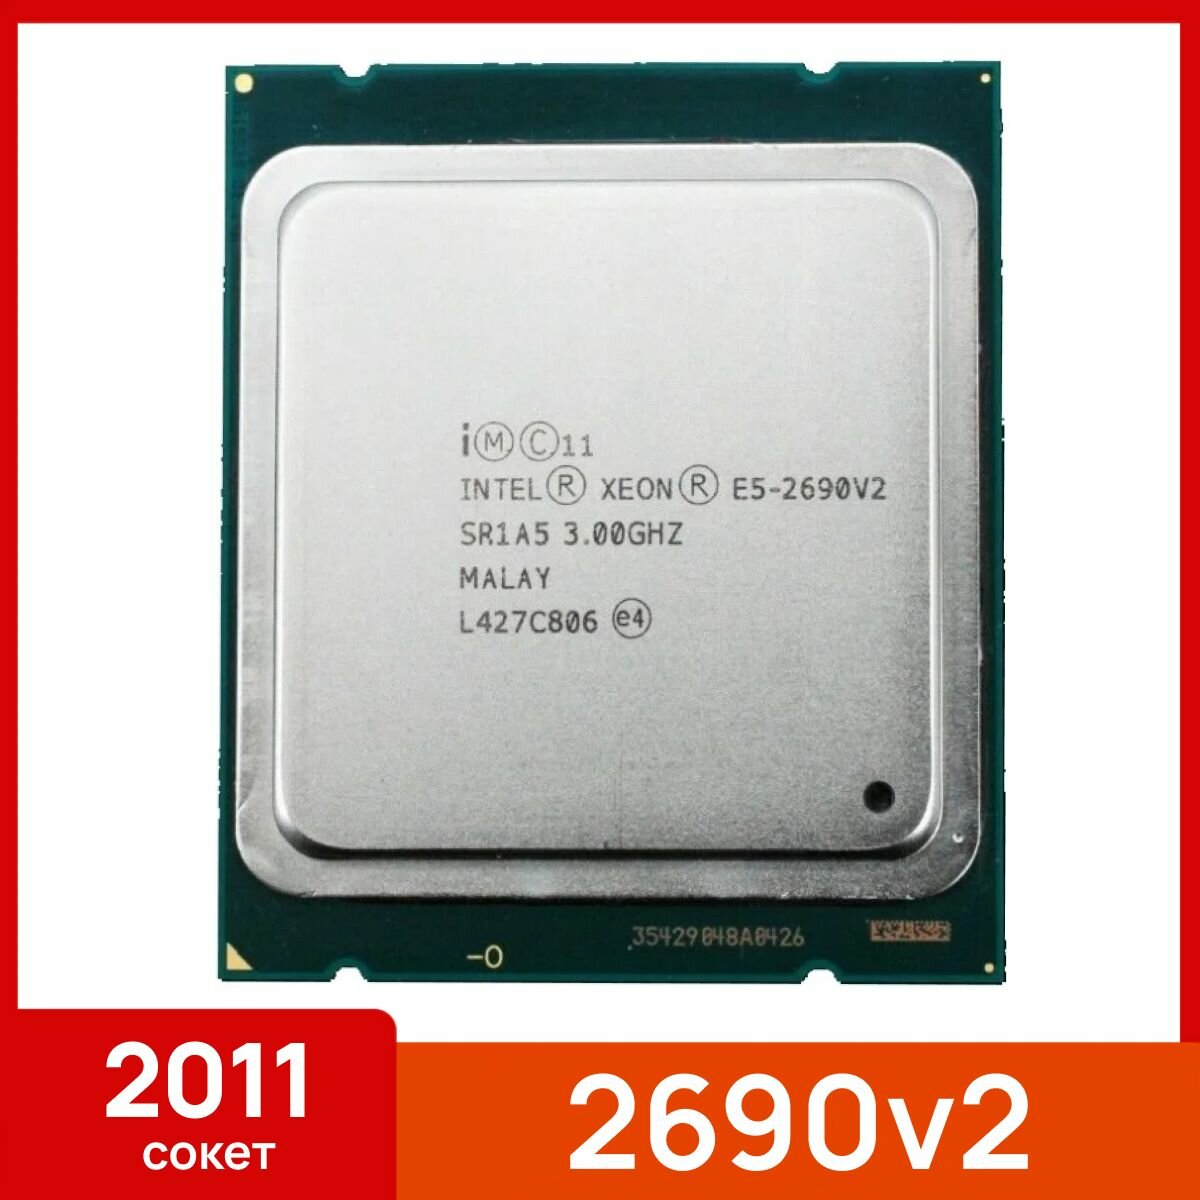 Процессор Intel Xeon E5 2690v2